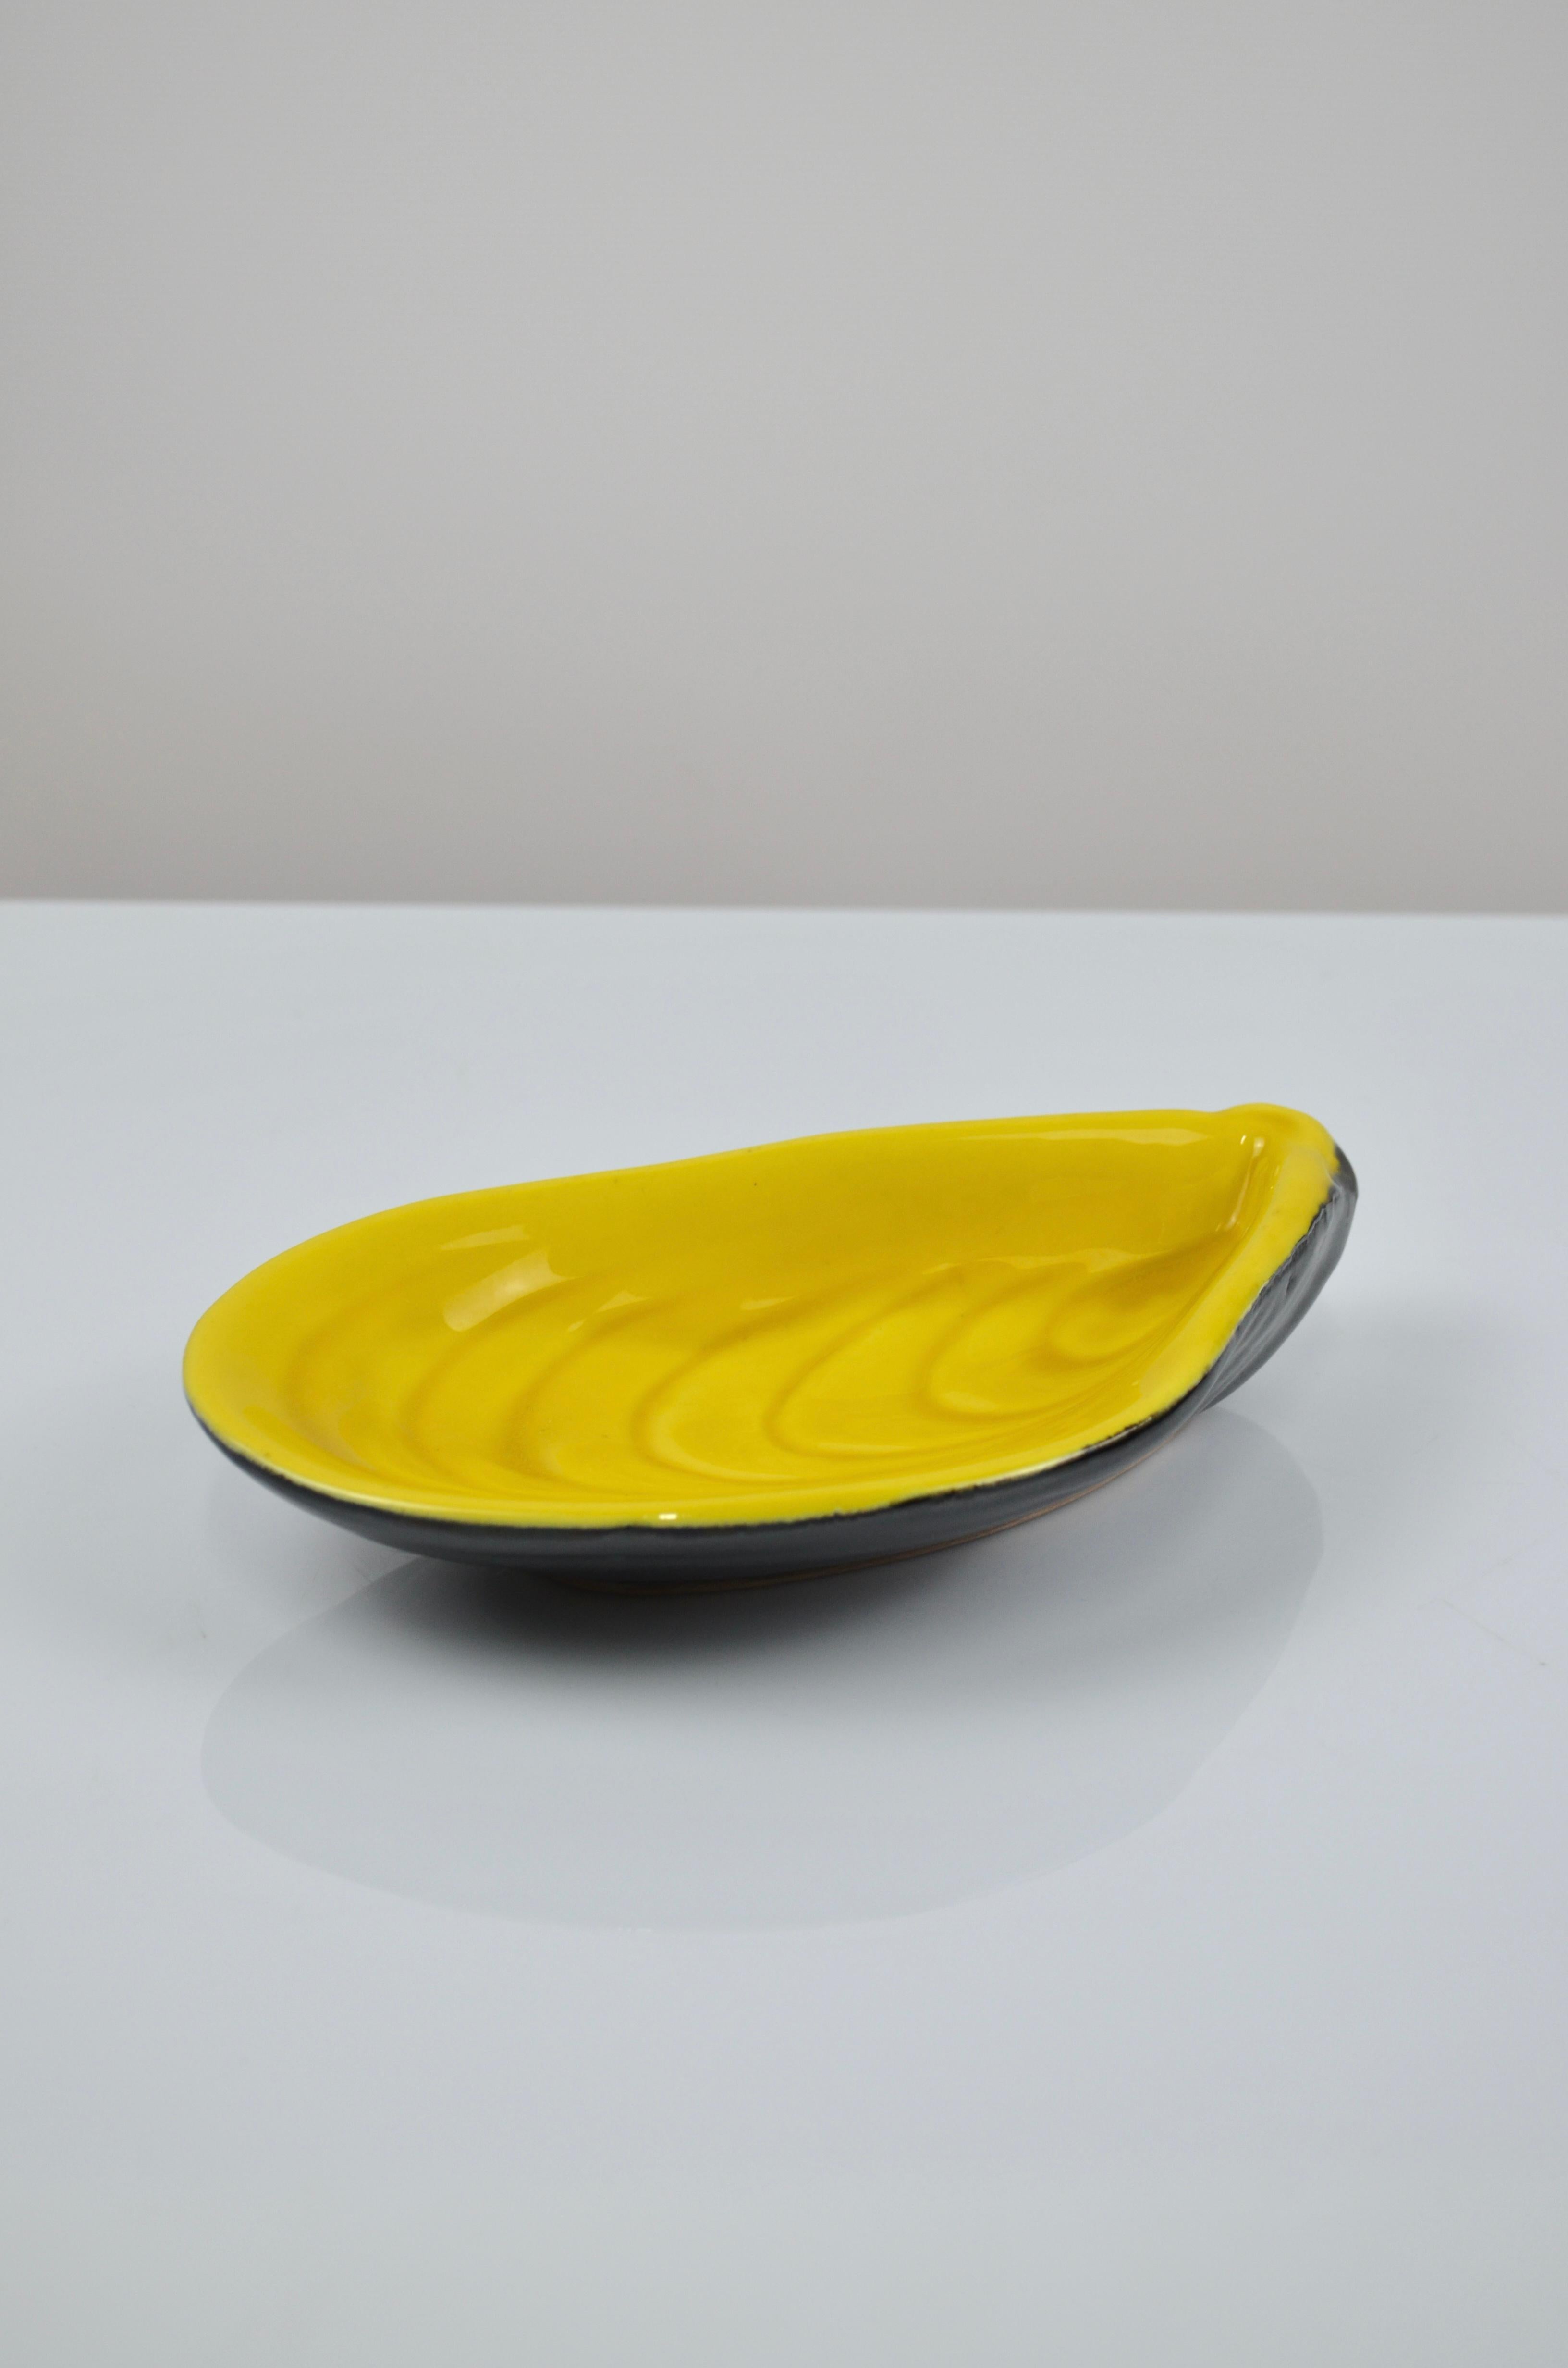 superbe vide-poche en céramique en forme de moule, par Albert FERLAY, Vallauris, France, années 50
Très beau contraste de couleurs entre le jaune et le noir.
Pièce signée ci-dessous